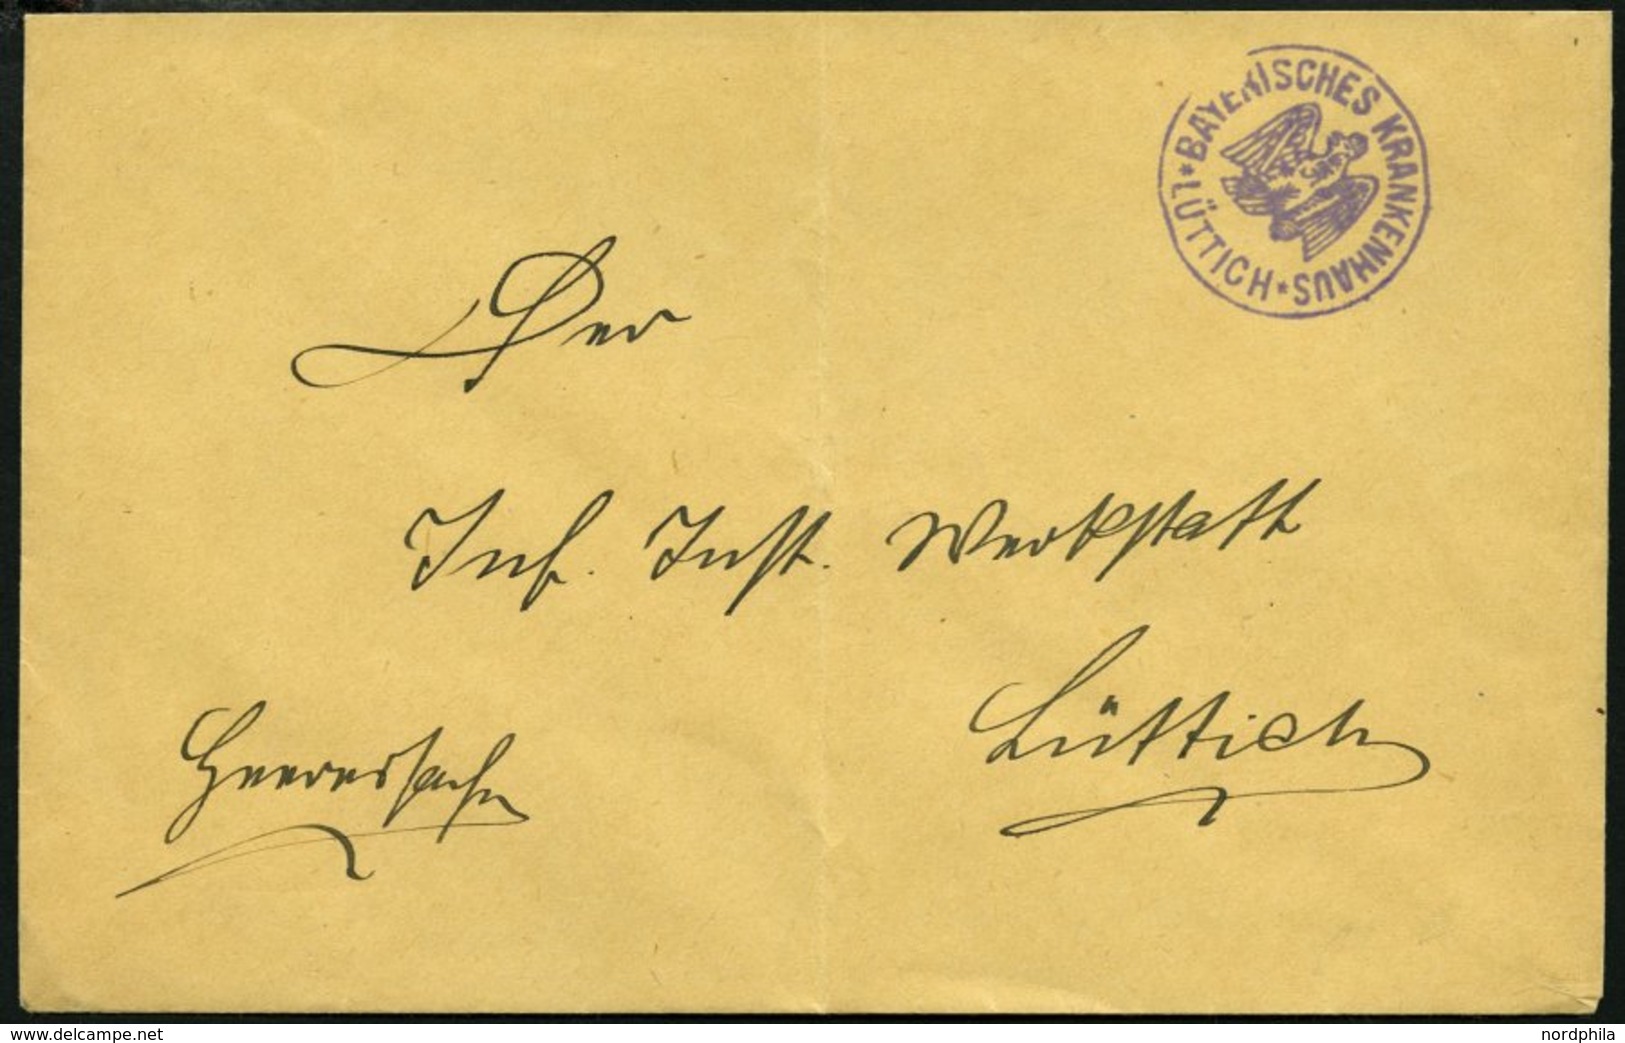 FELDPOST I.WK Ortsbrief Mit Violettem K1 BAYRISCHES KRANKENHAUS LÜTTICH, Feinst (senkrecht Gefaltet) - Occupation 1914-18